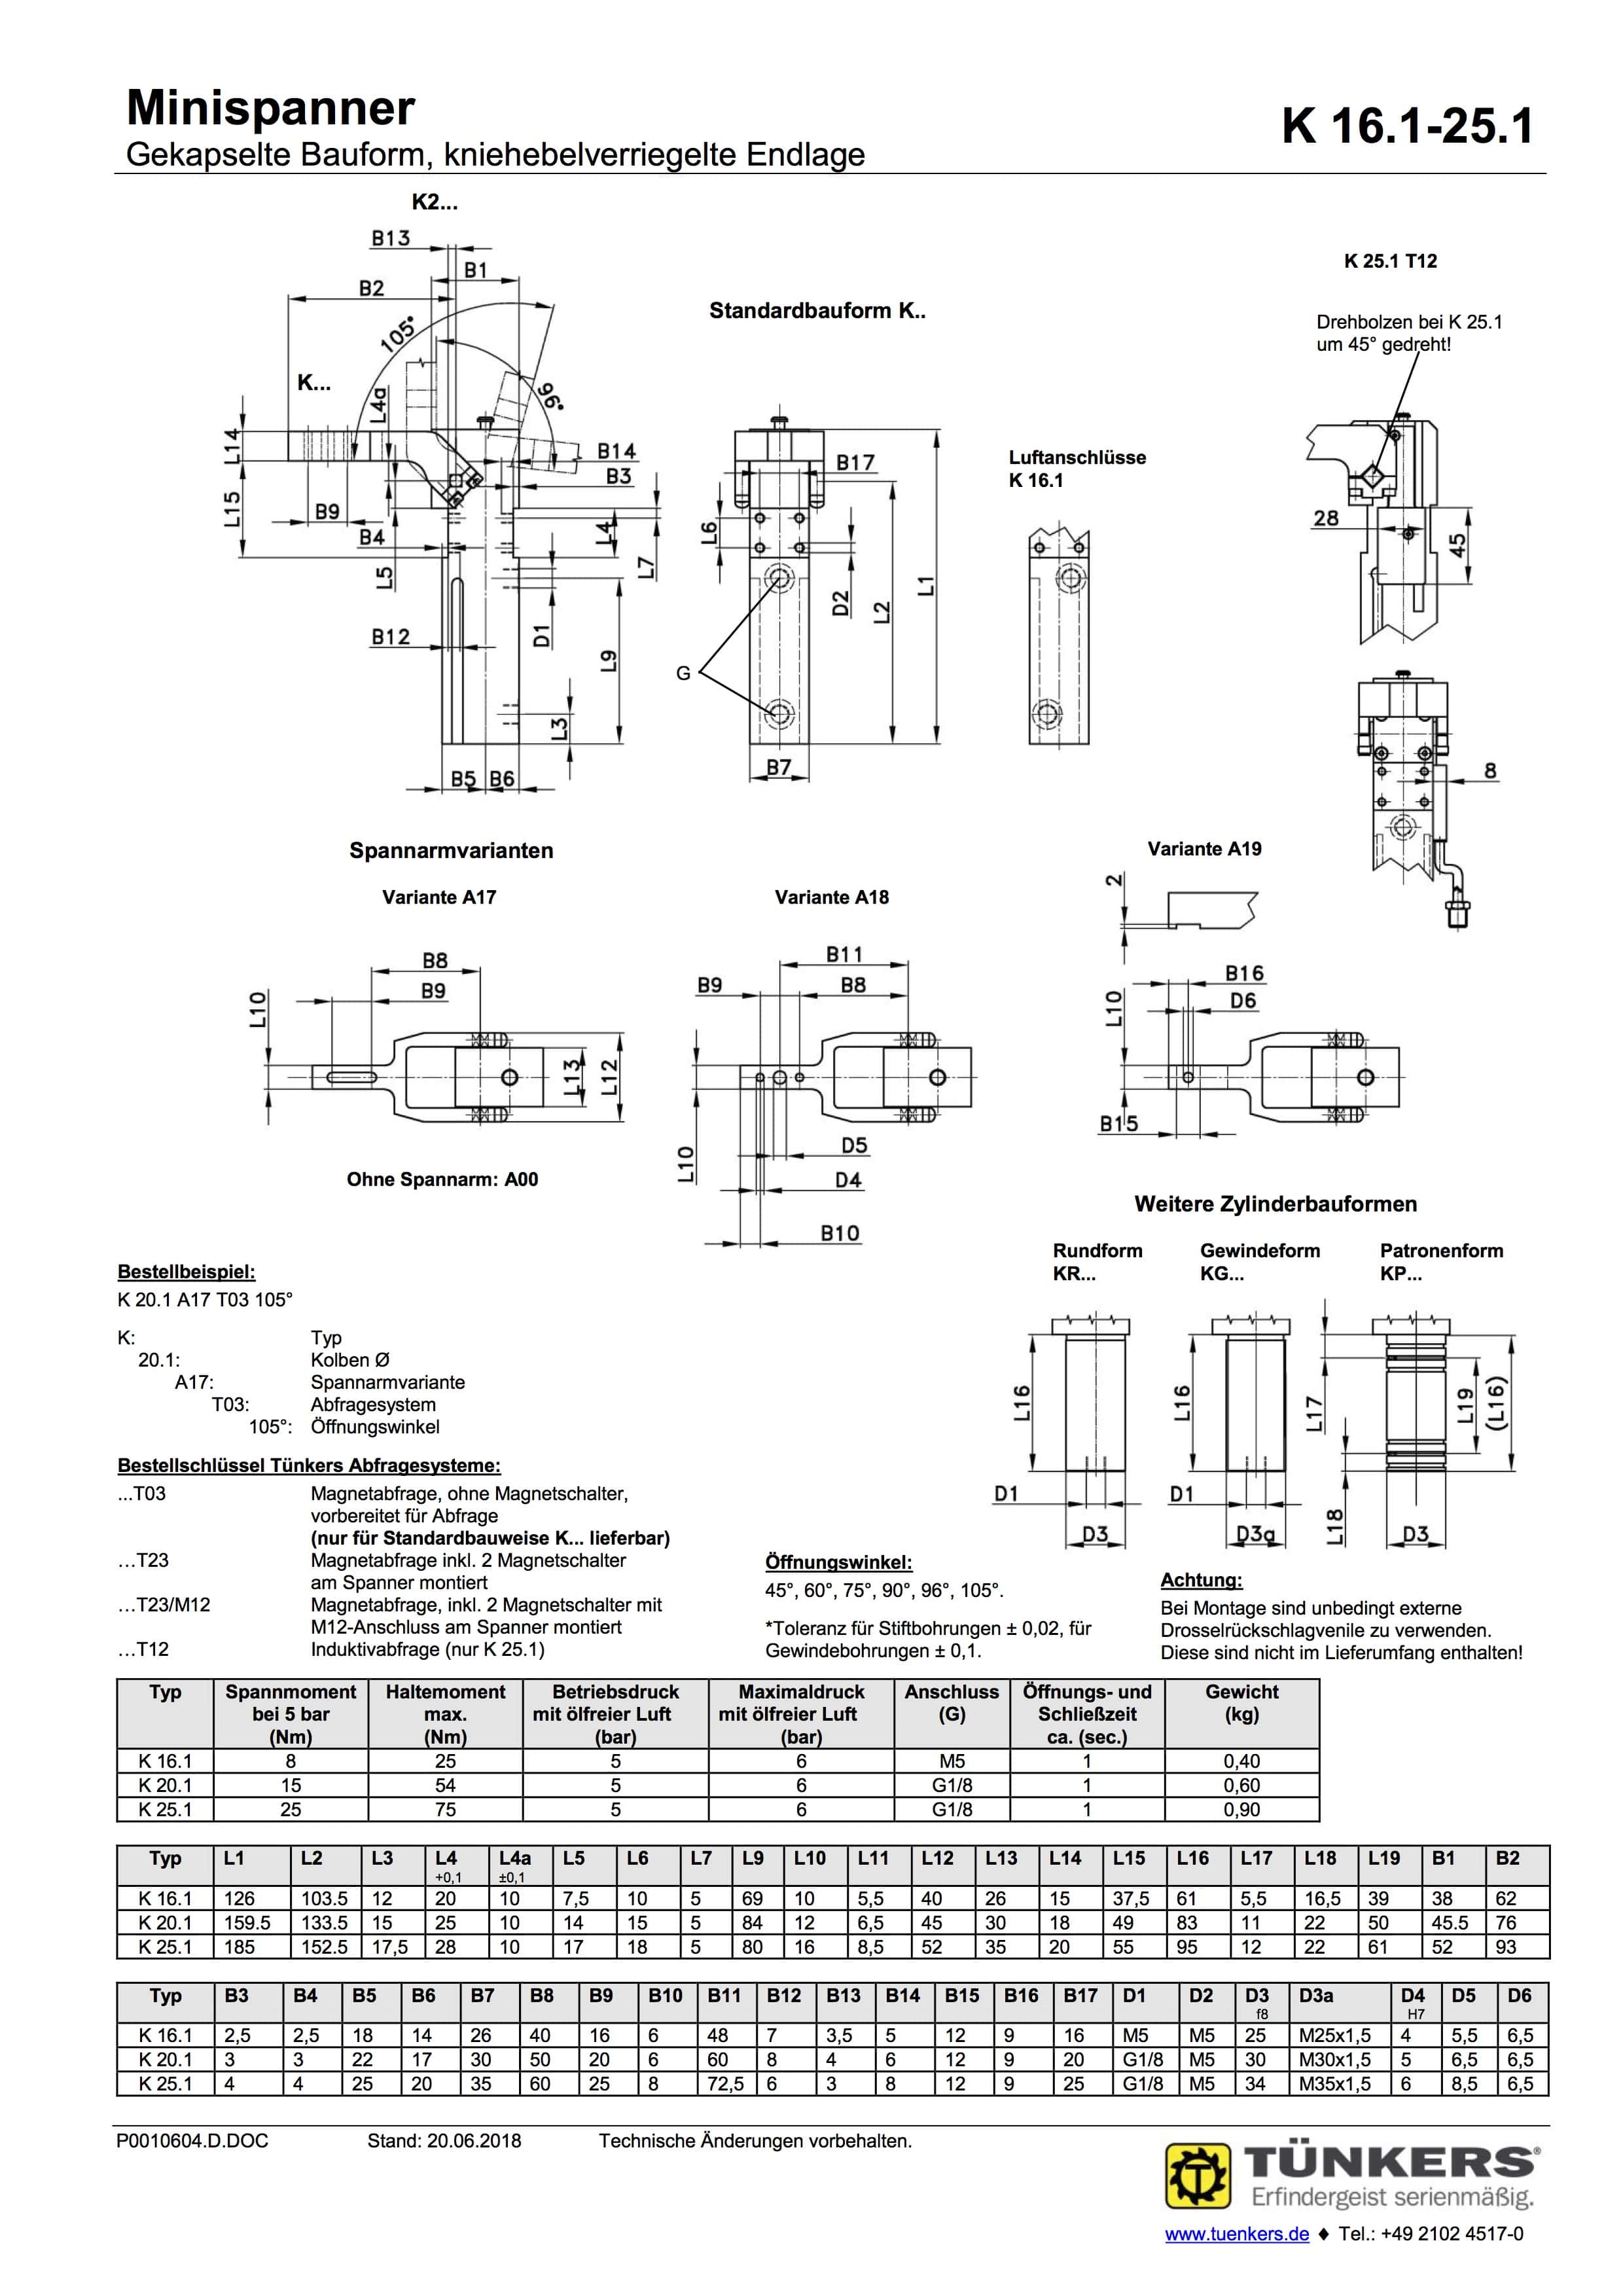 K 16.1 25.1 Technische Zeichnung Minispanner Gekapselte Bauform kniehebelverriegelte Endlage